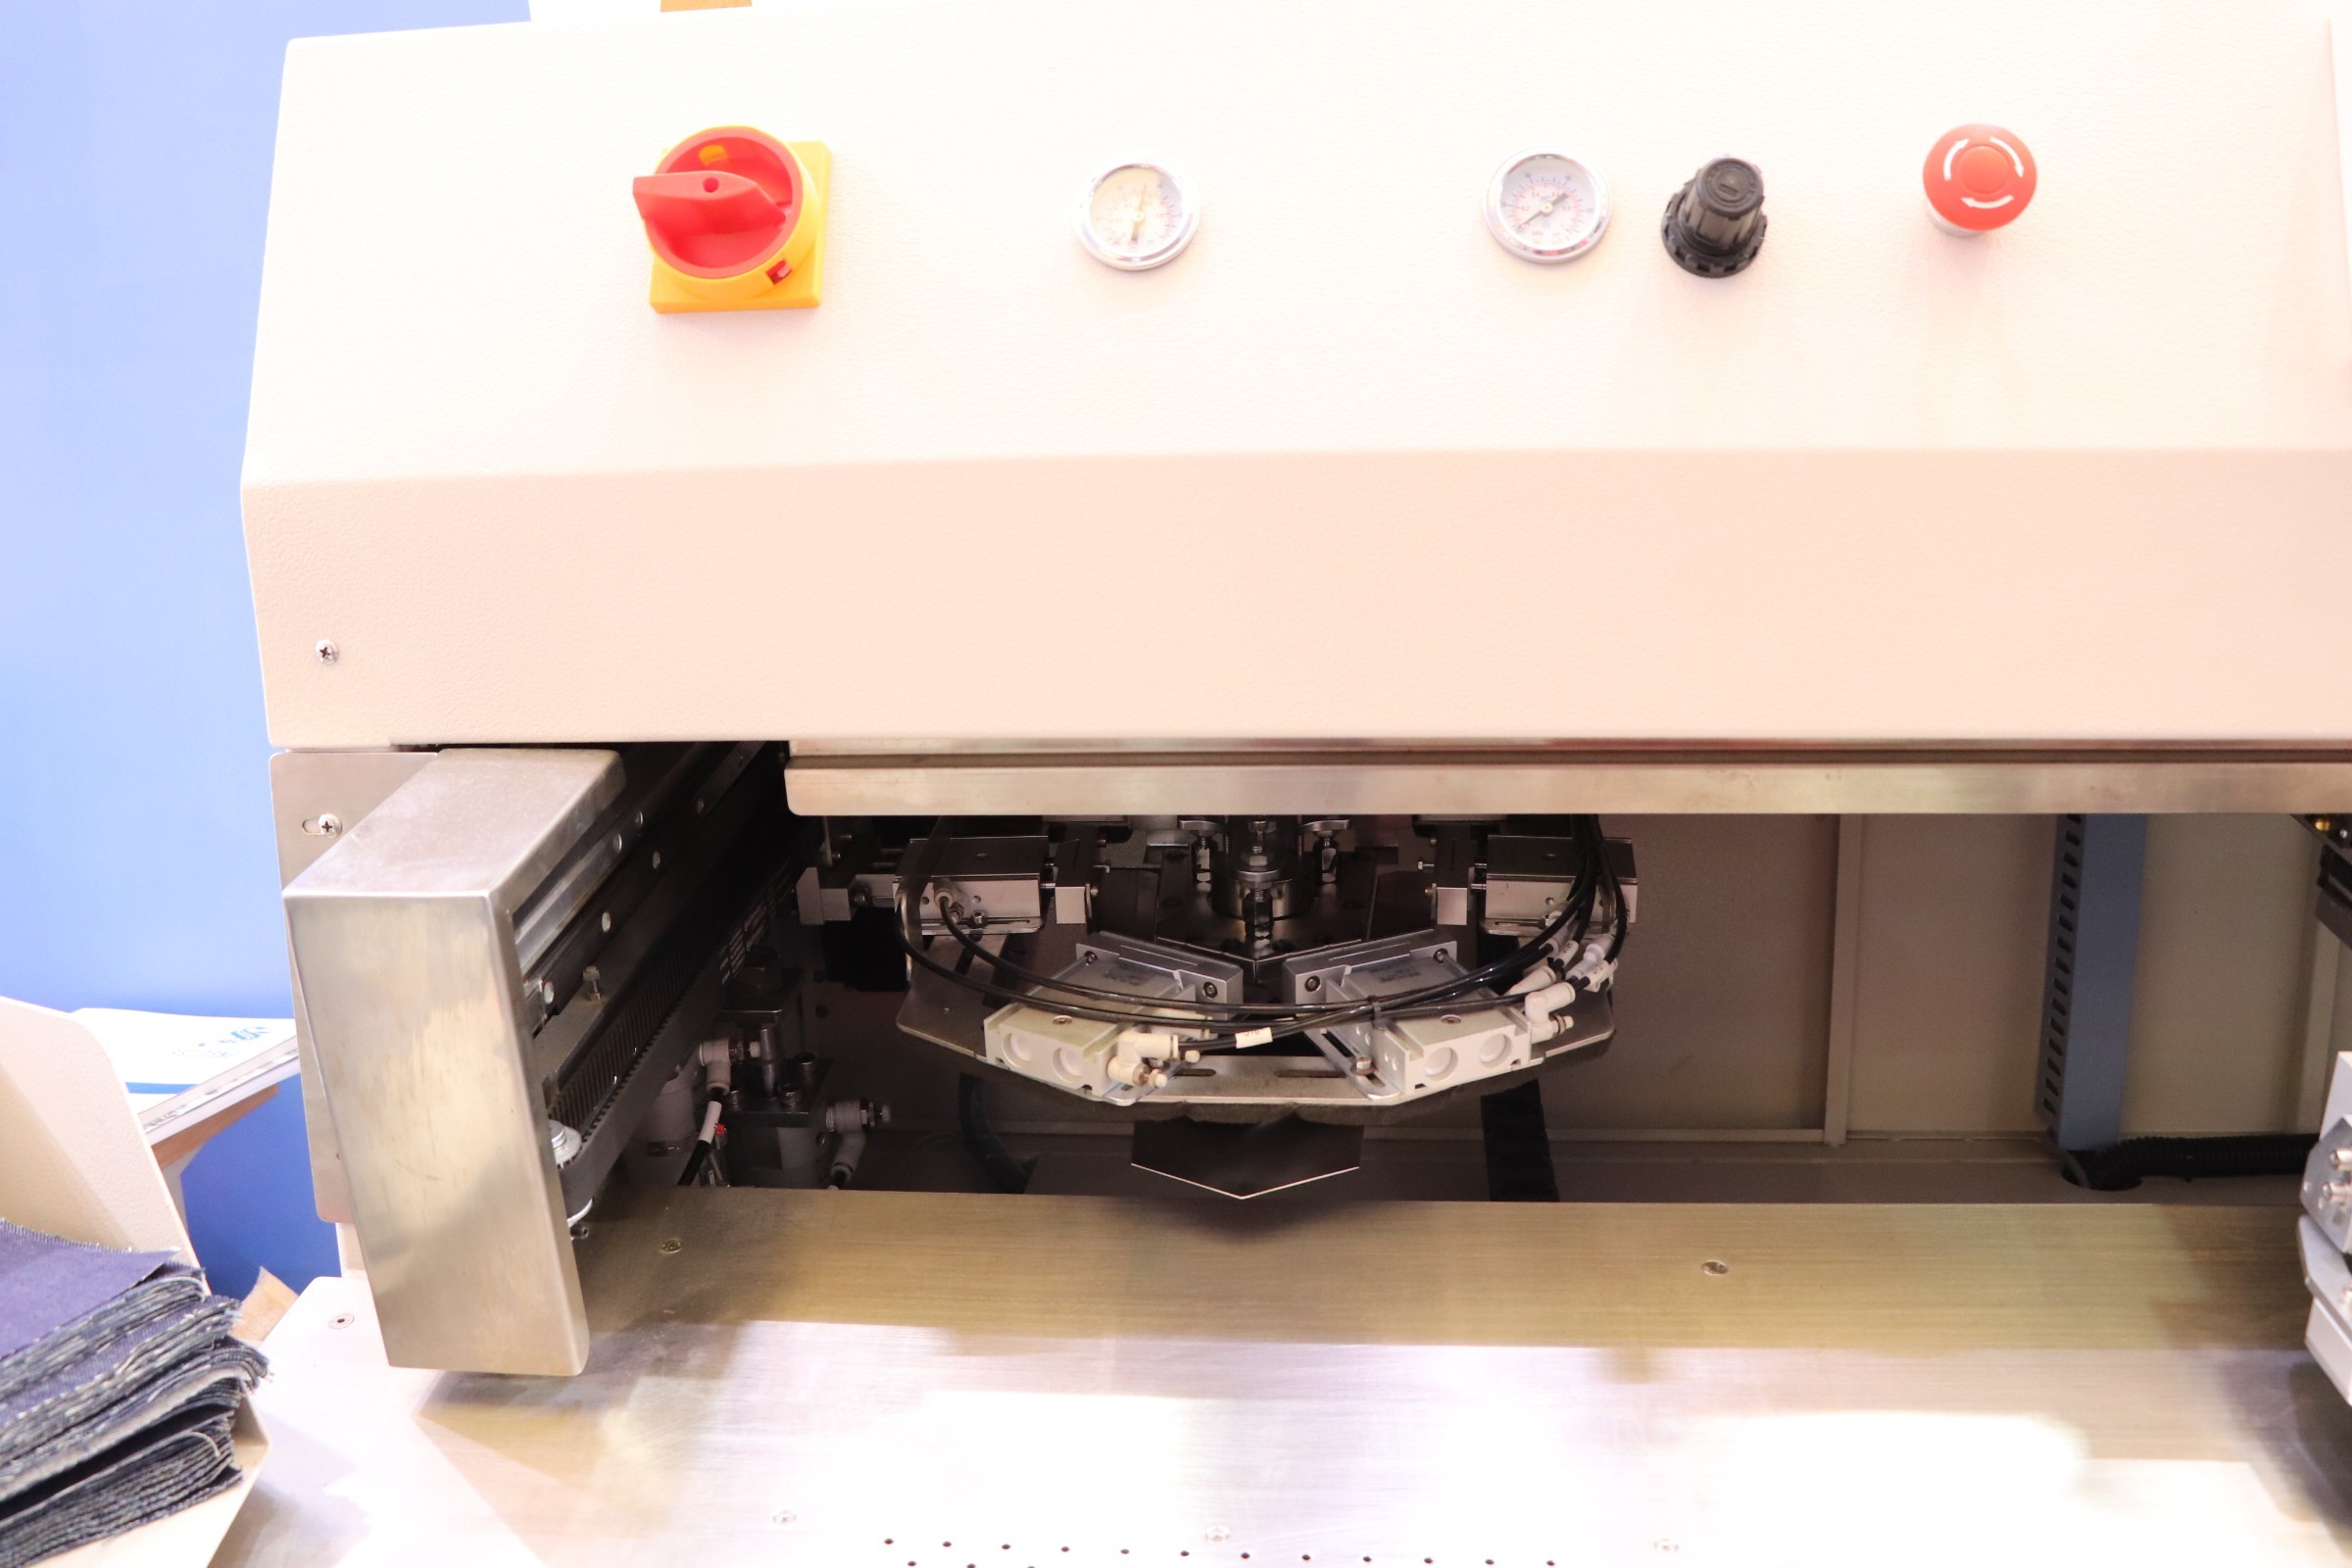 Machine à coudre de poche à fixation CNC automatique ZY9000TDB